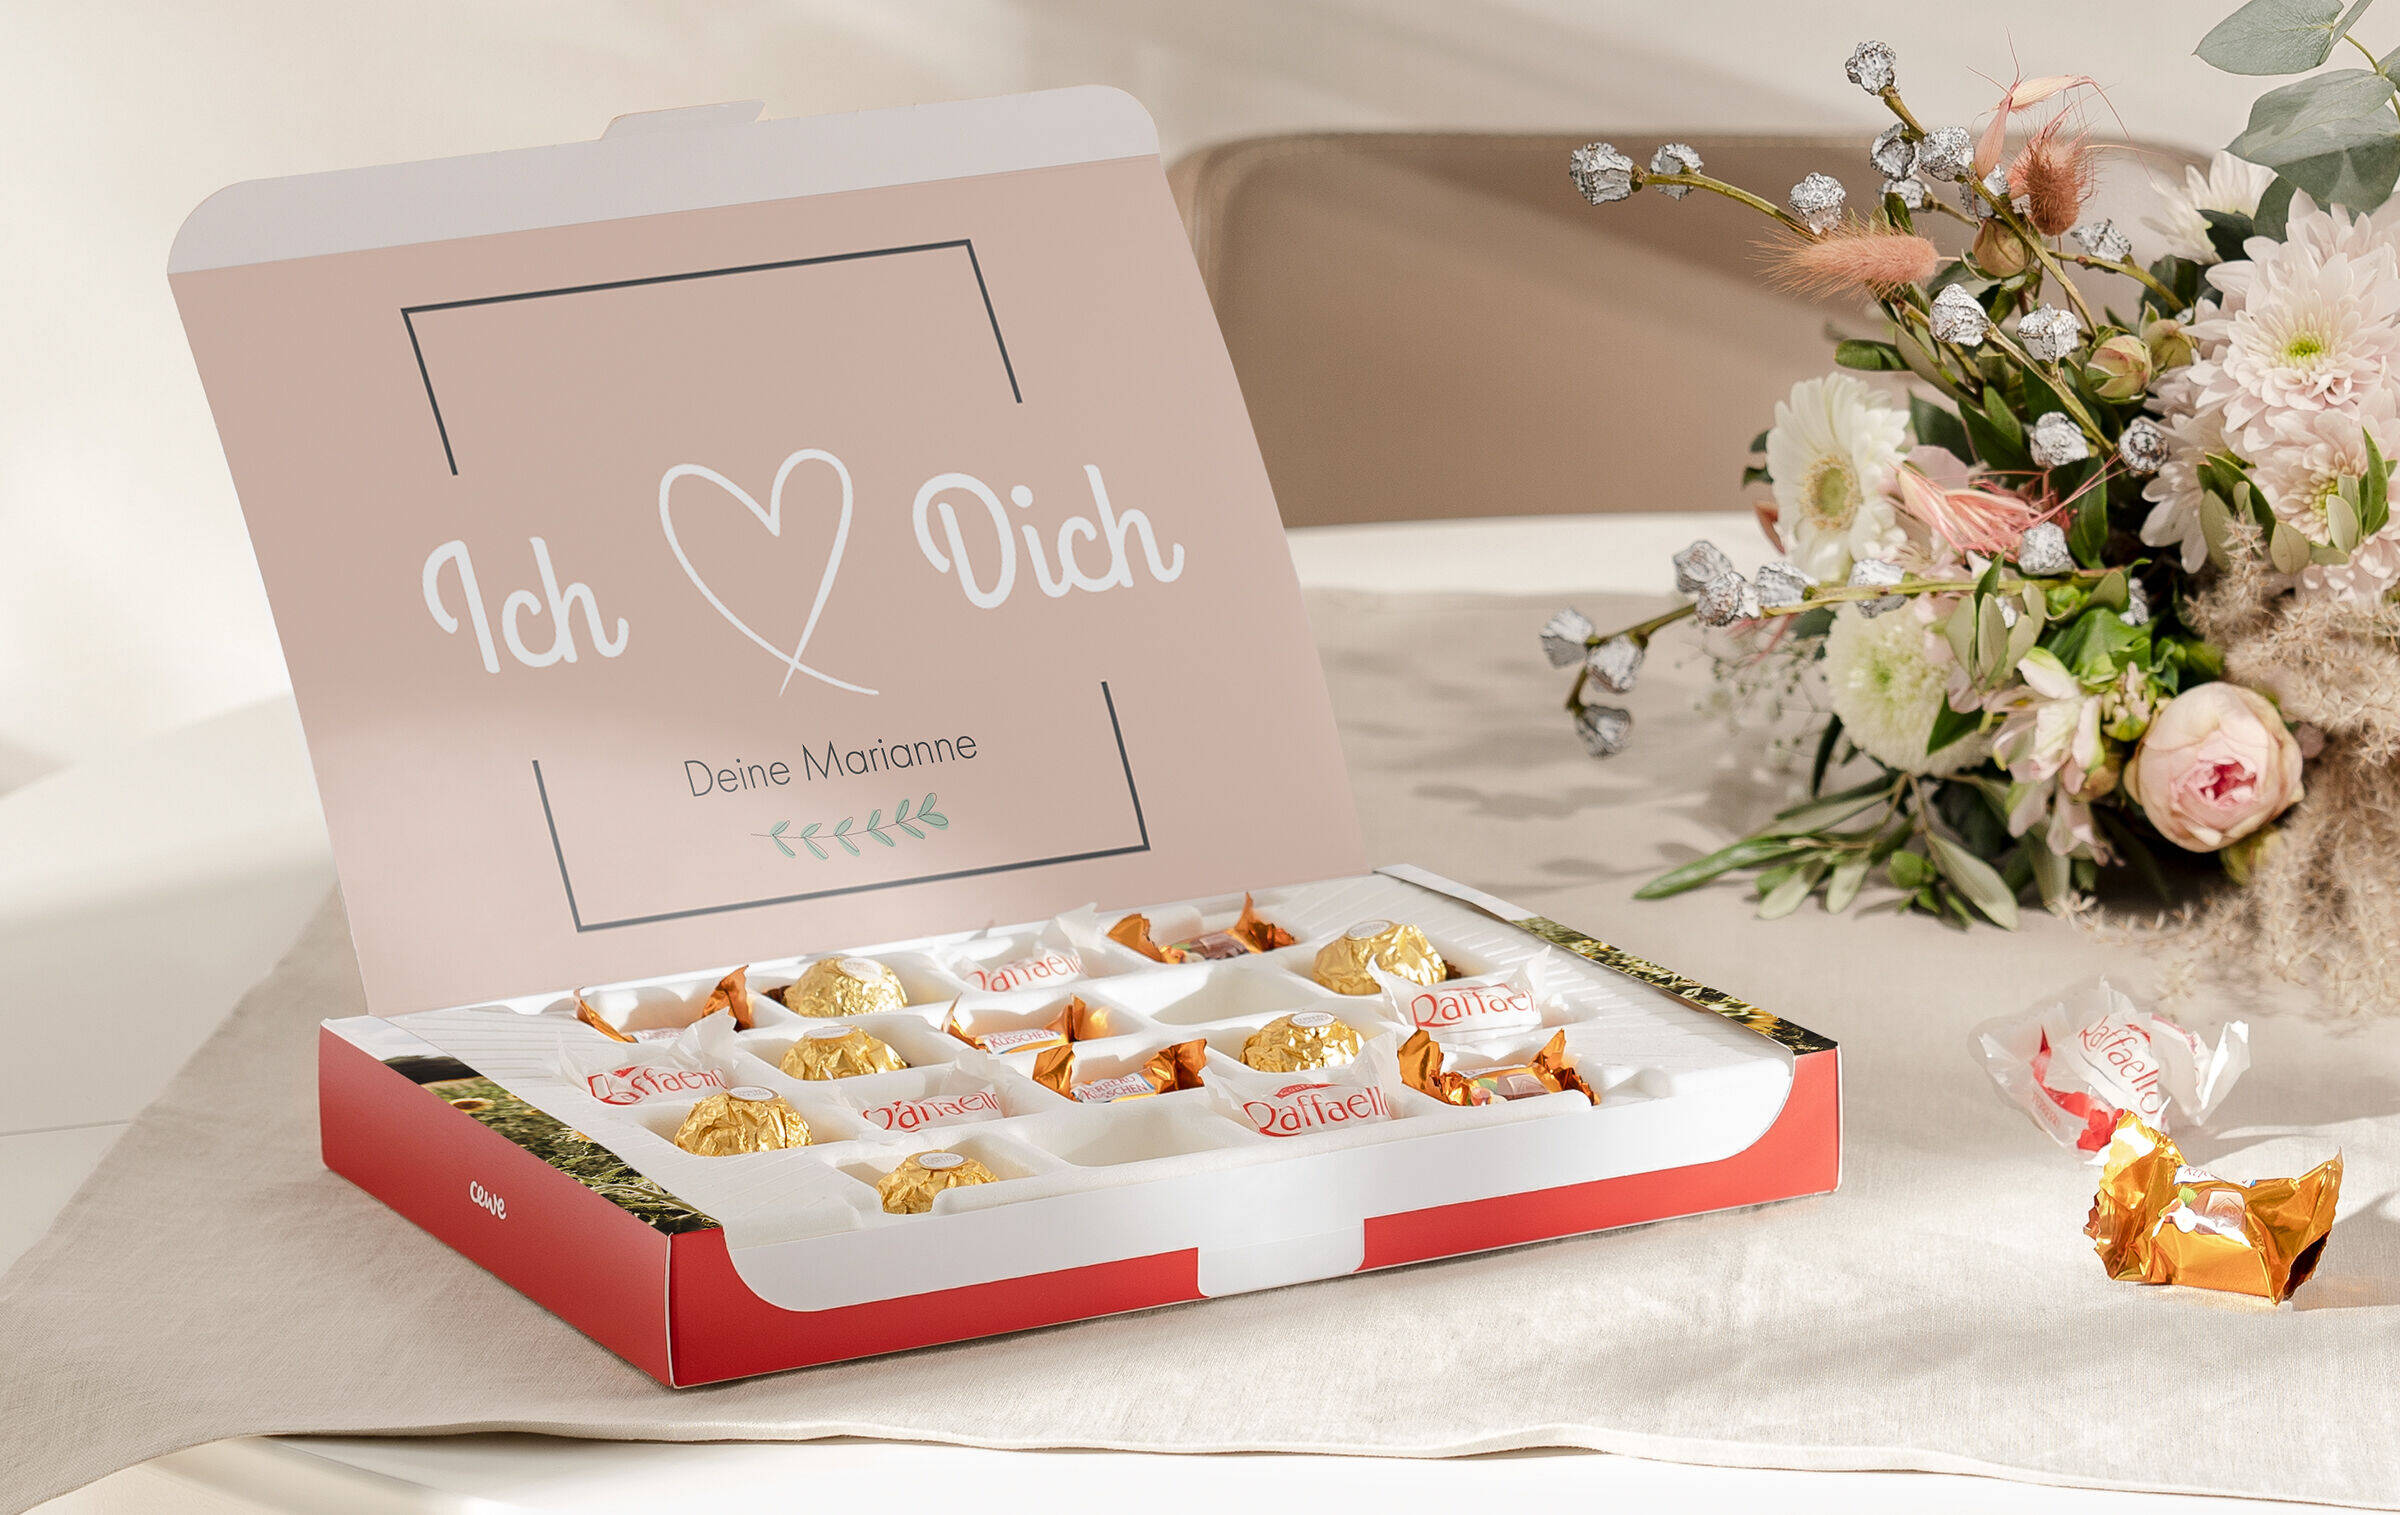 Die aufgeklappe Foto-Geschenkbox steht neben einem Blumenstrauß auf einem Tisch. Auf der Innenseite der Box steht mit Cliparts und Text "Ich liebe Dich. Deine Marianne".